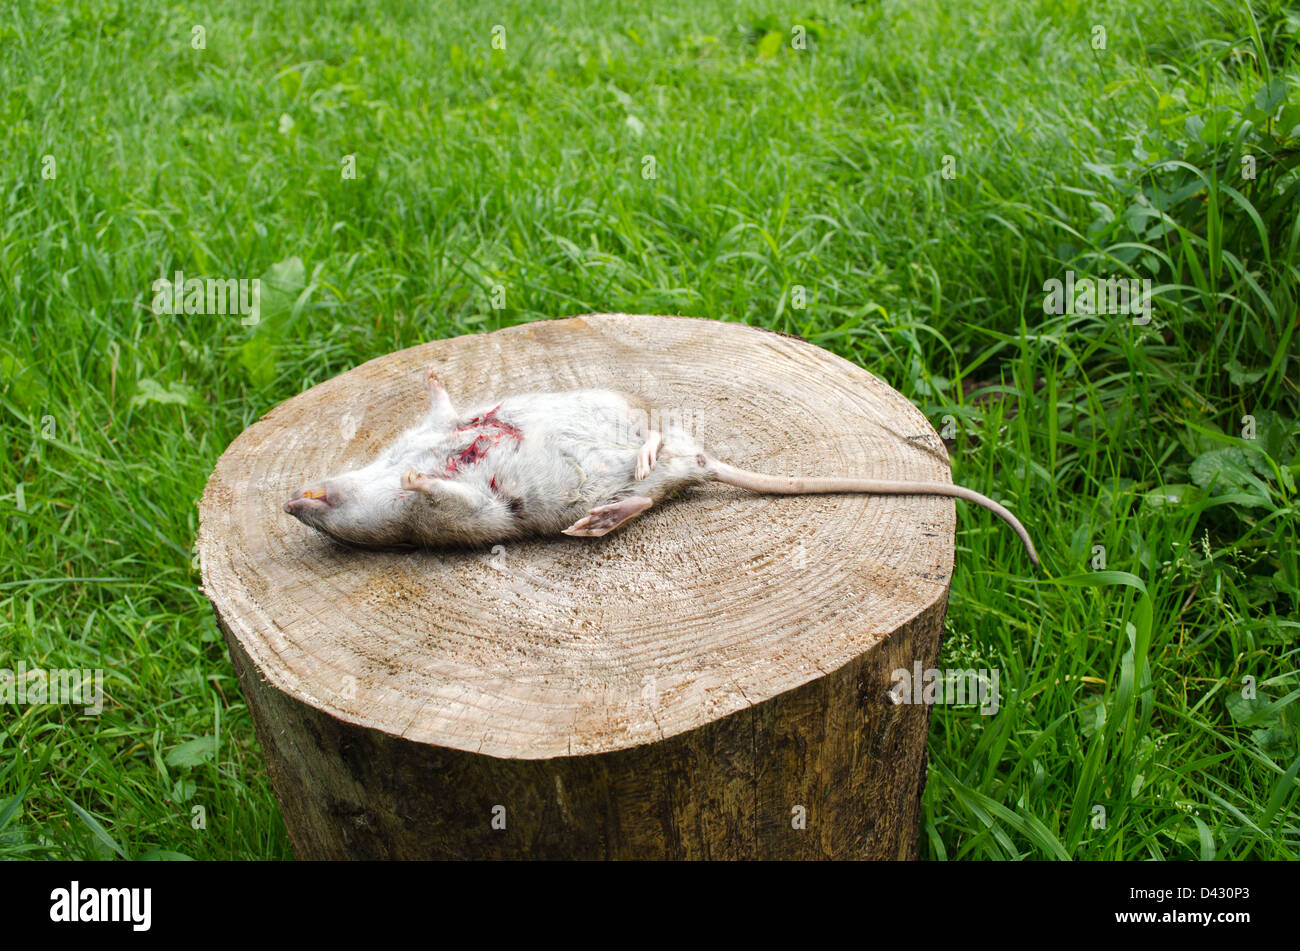 tote Ratte mit blutigen Wunde und gelbe Zähne auf Baumstumpf, umgeben von grünen Wiese Rasen liegen. Stockfoto